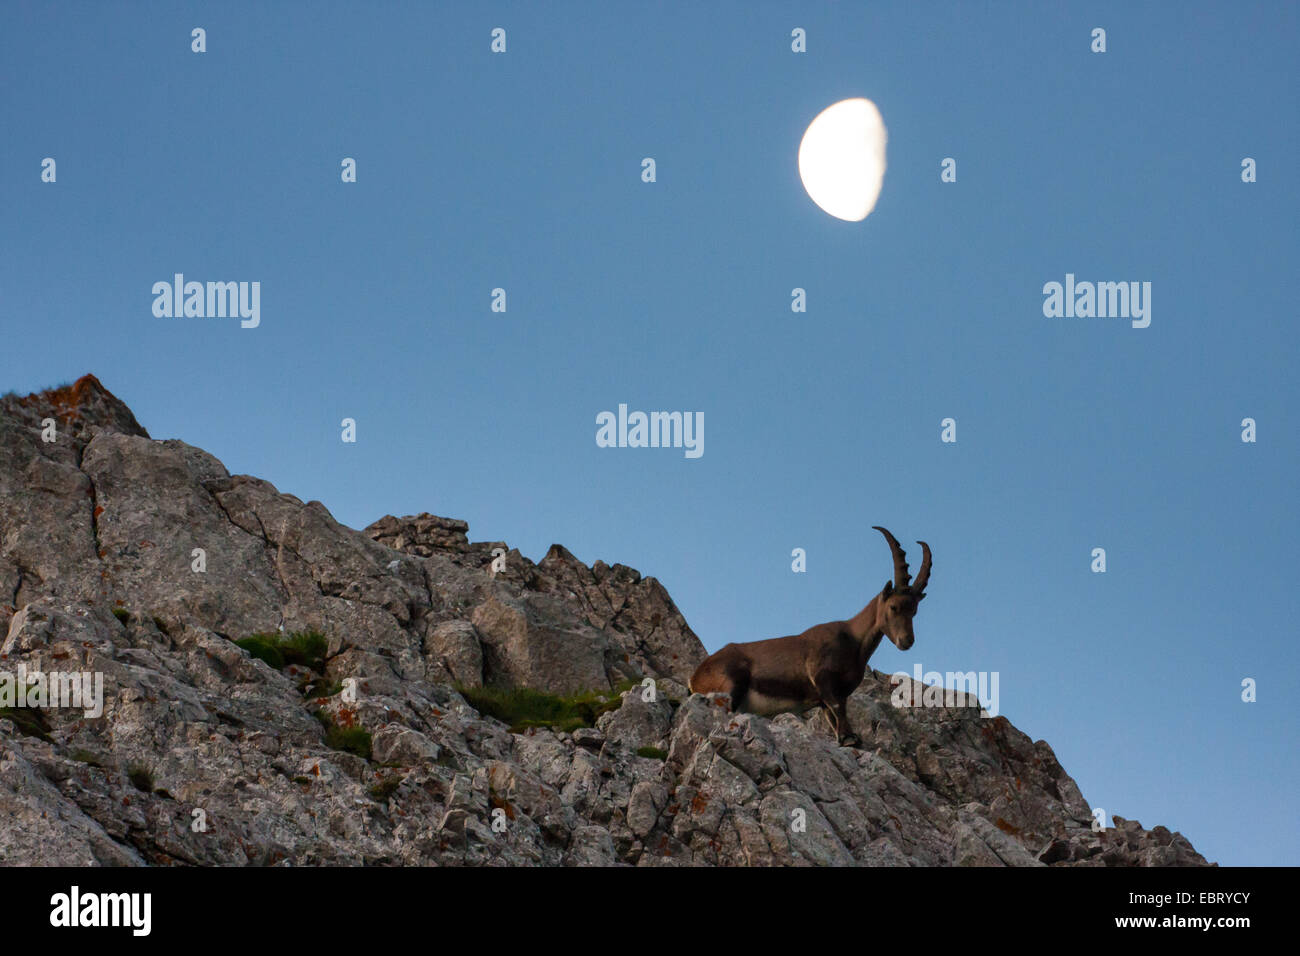 Alpine ibex (Capra ibex, Capra ibex ibex), ibex in mountain scenery with setting moon, Switzerland, Alpstein, Altmann Stock Photo